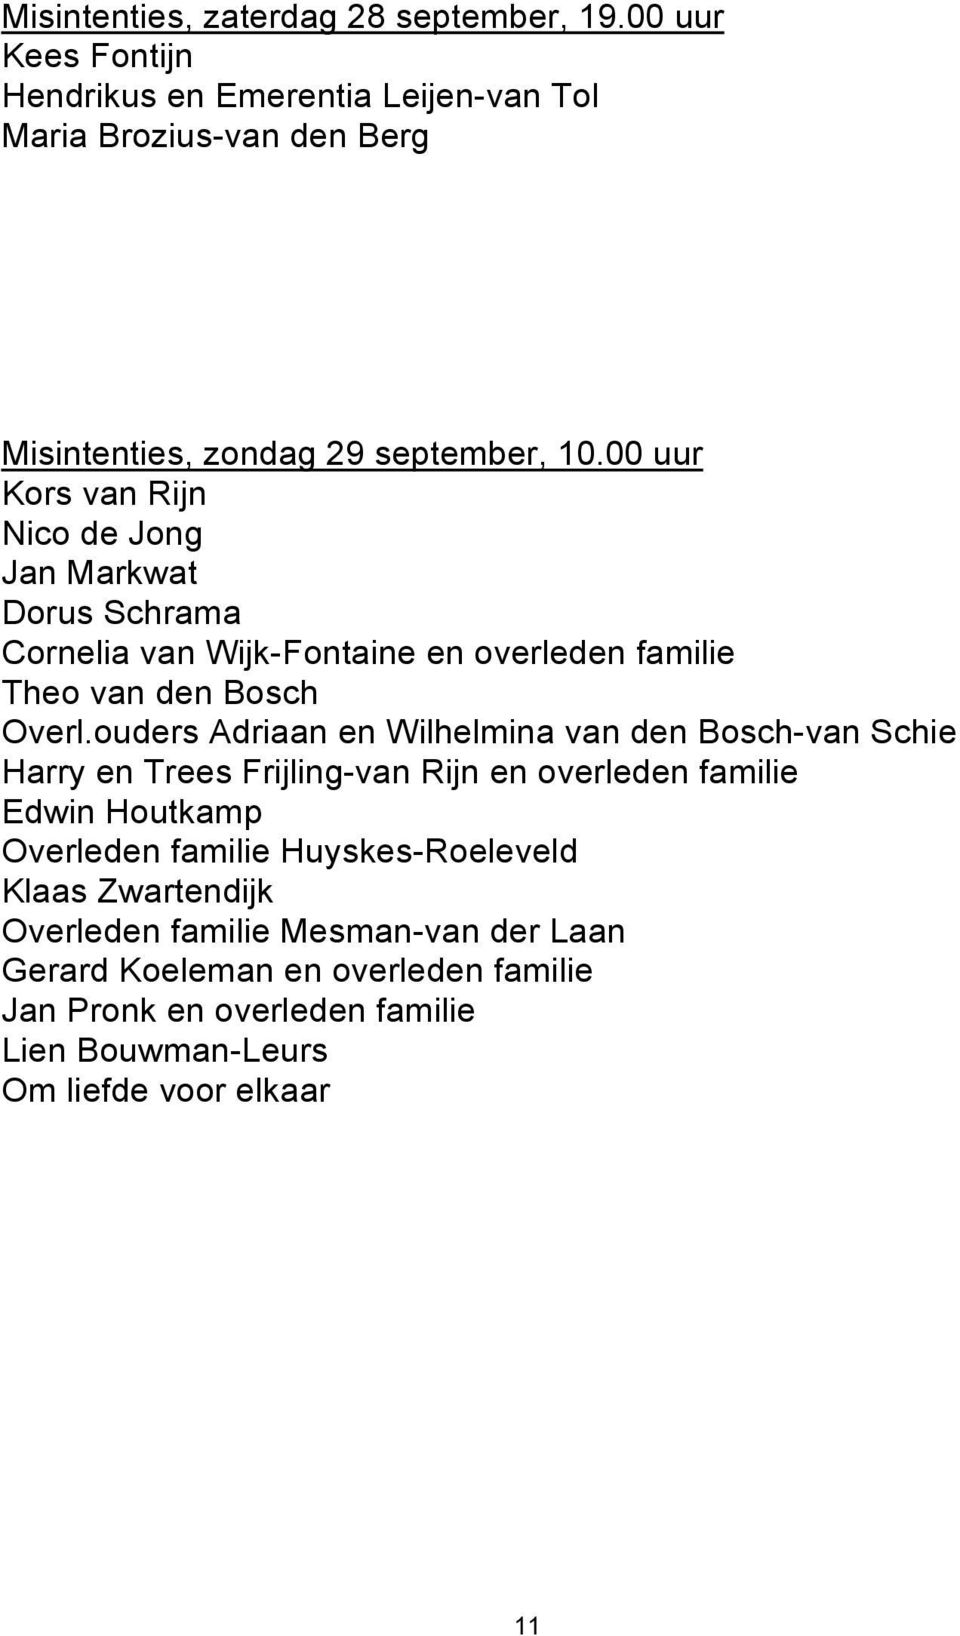 00 uur Kors van Rijn Nico de Jong Jan Markwat Dorus Schrama Cornelia van Wijk-Fontaine en overleden familie Theo van den Bosch Overl.